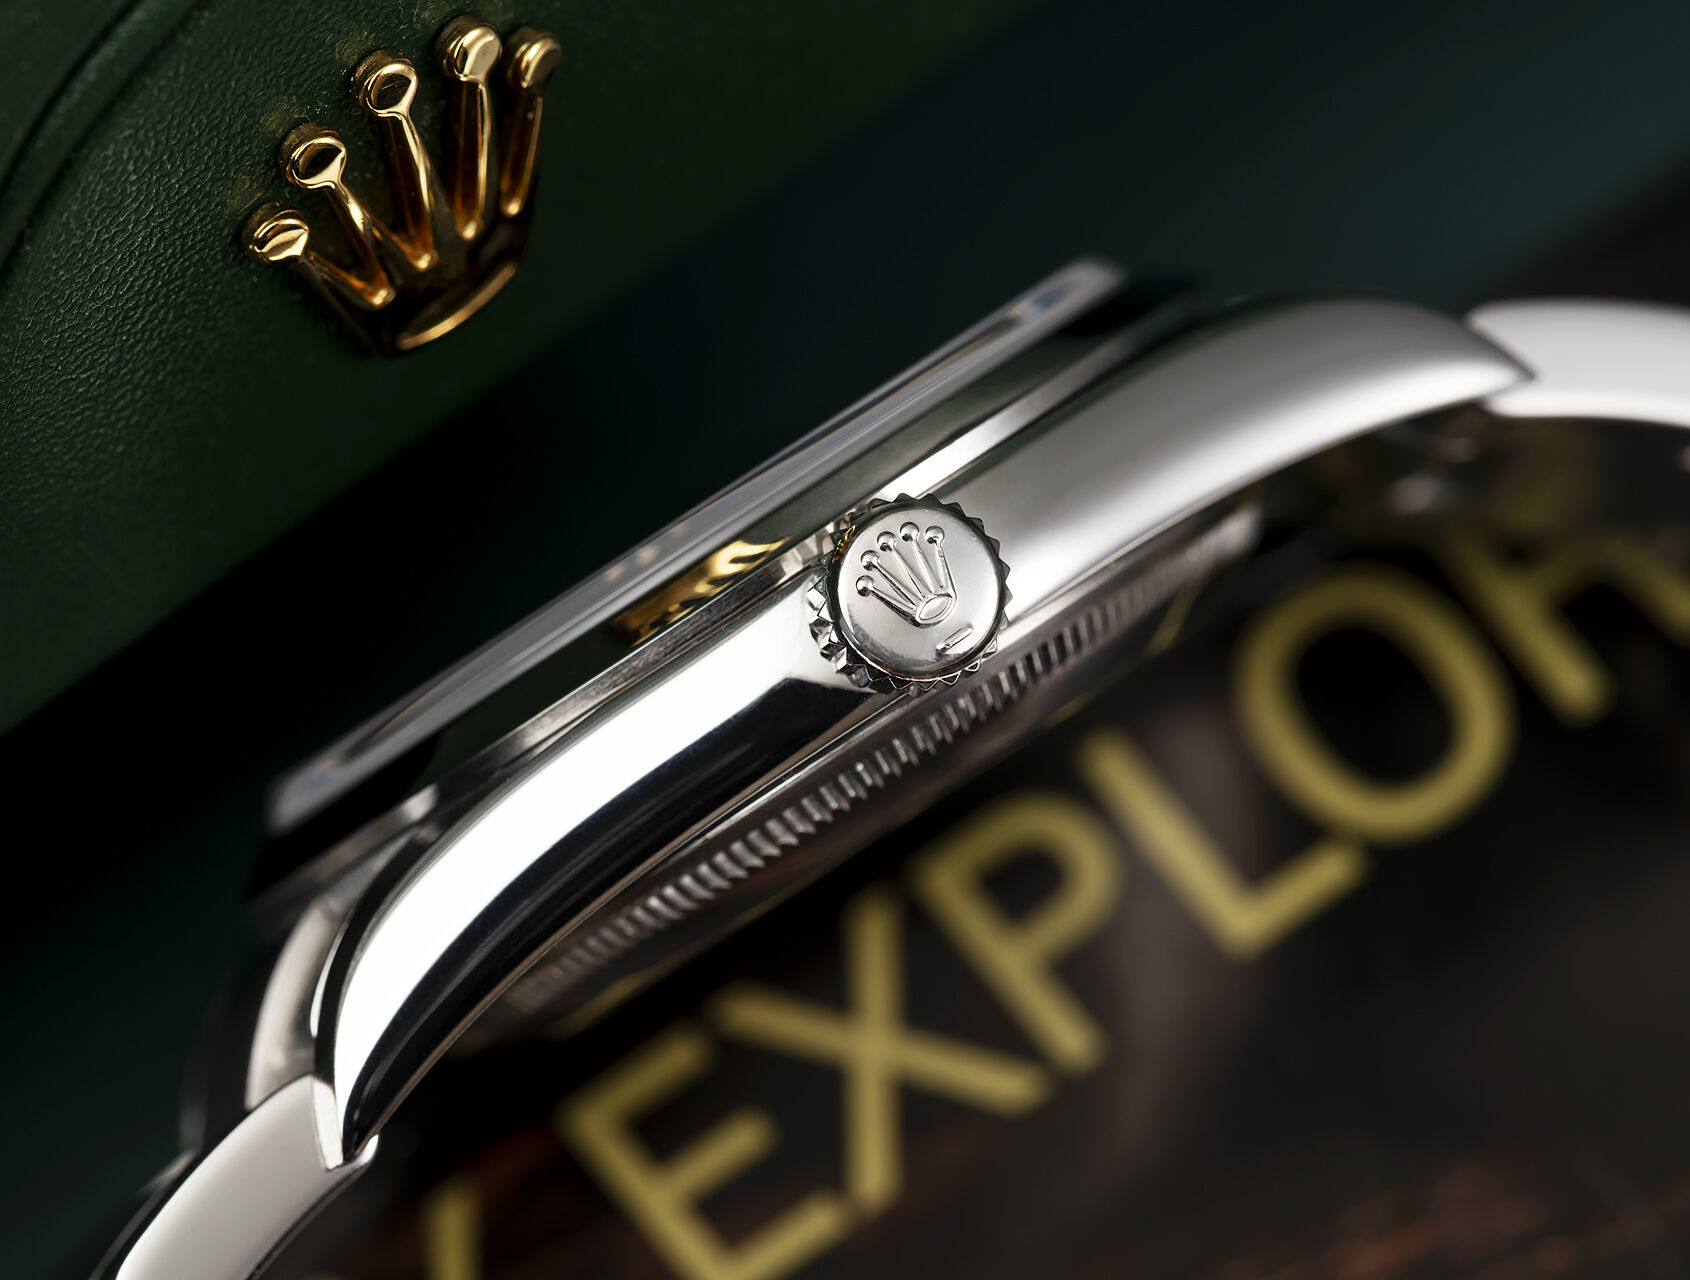 ref 114270 | 114270 - Box & Certificate | Rolex Explorer